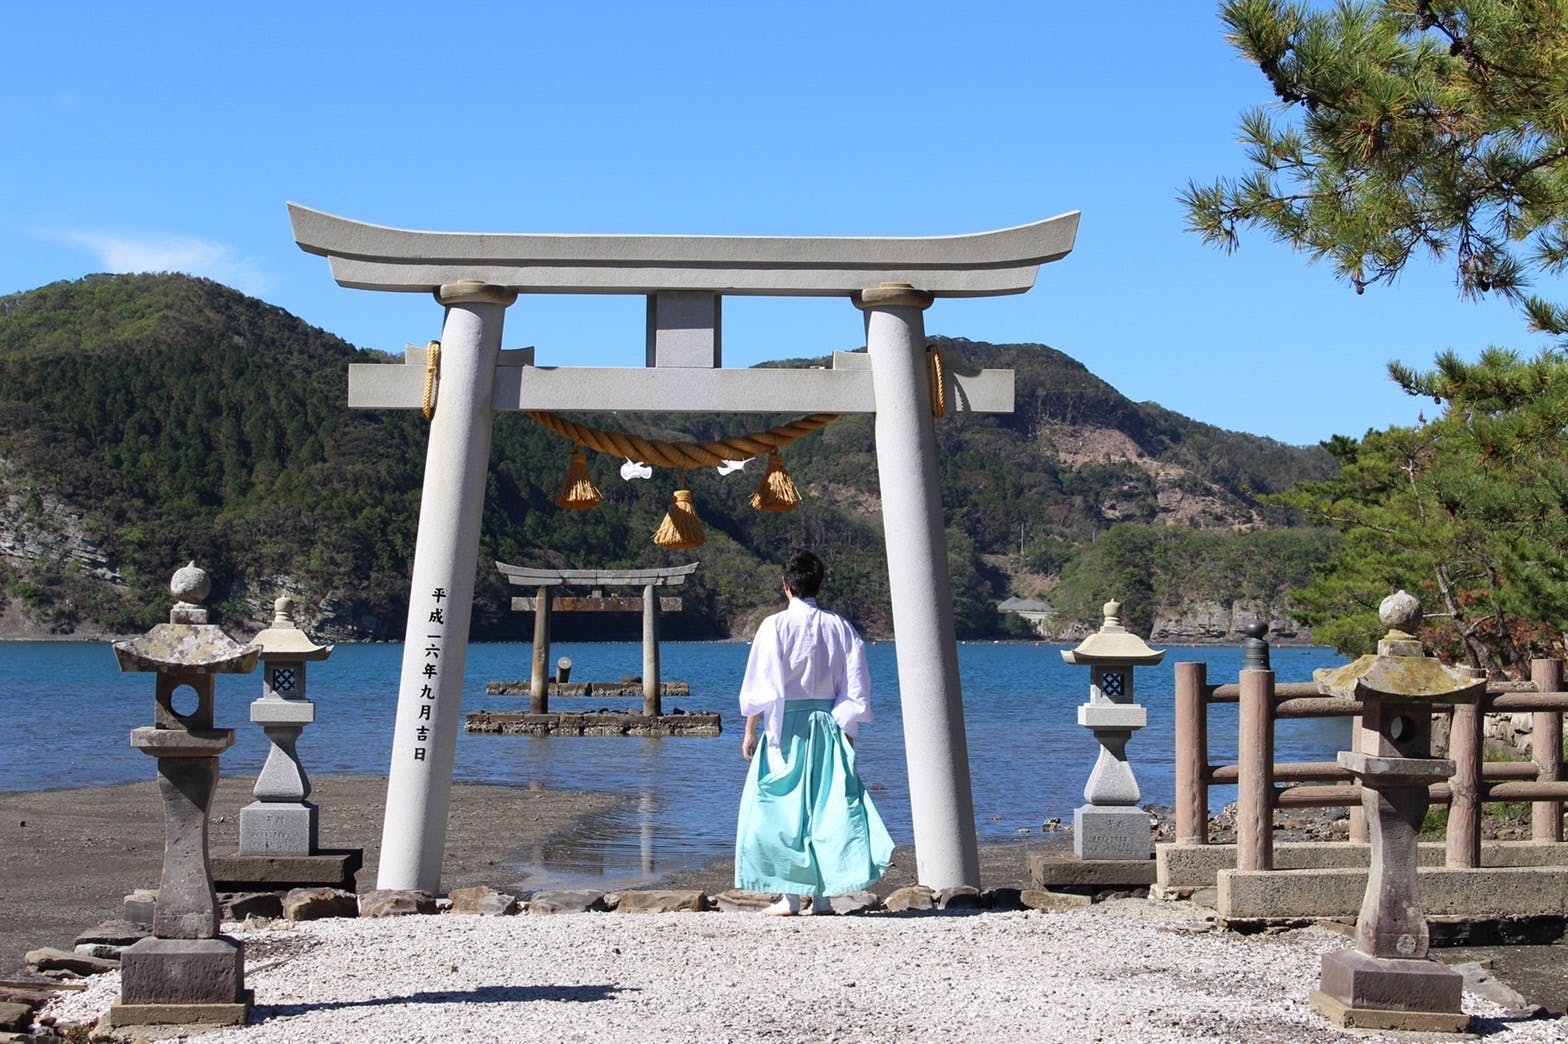 『Ghost of Tsushima』にも登場した「平成の大鳥居」再建クラウドファンディングが終了、目標額5倍以上の2710万円を集める。「誉れの石碑」に名を刻めるリターンが話題に_001